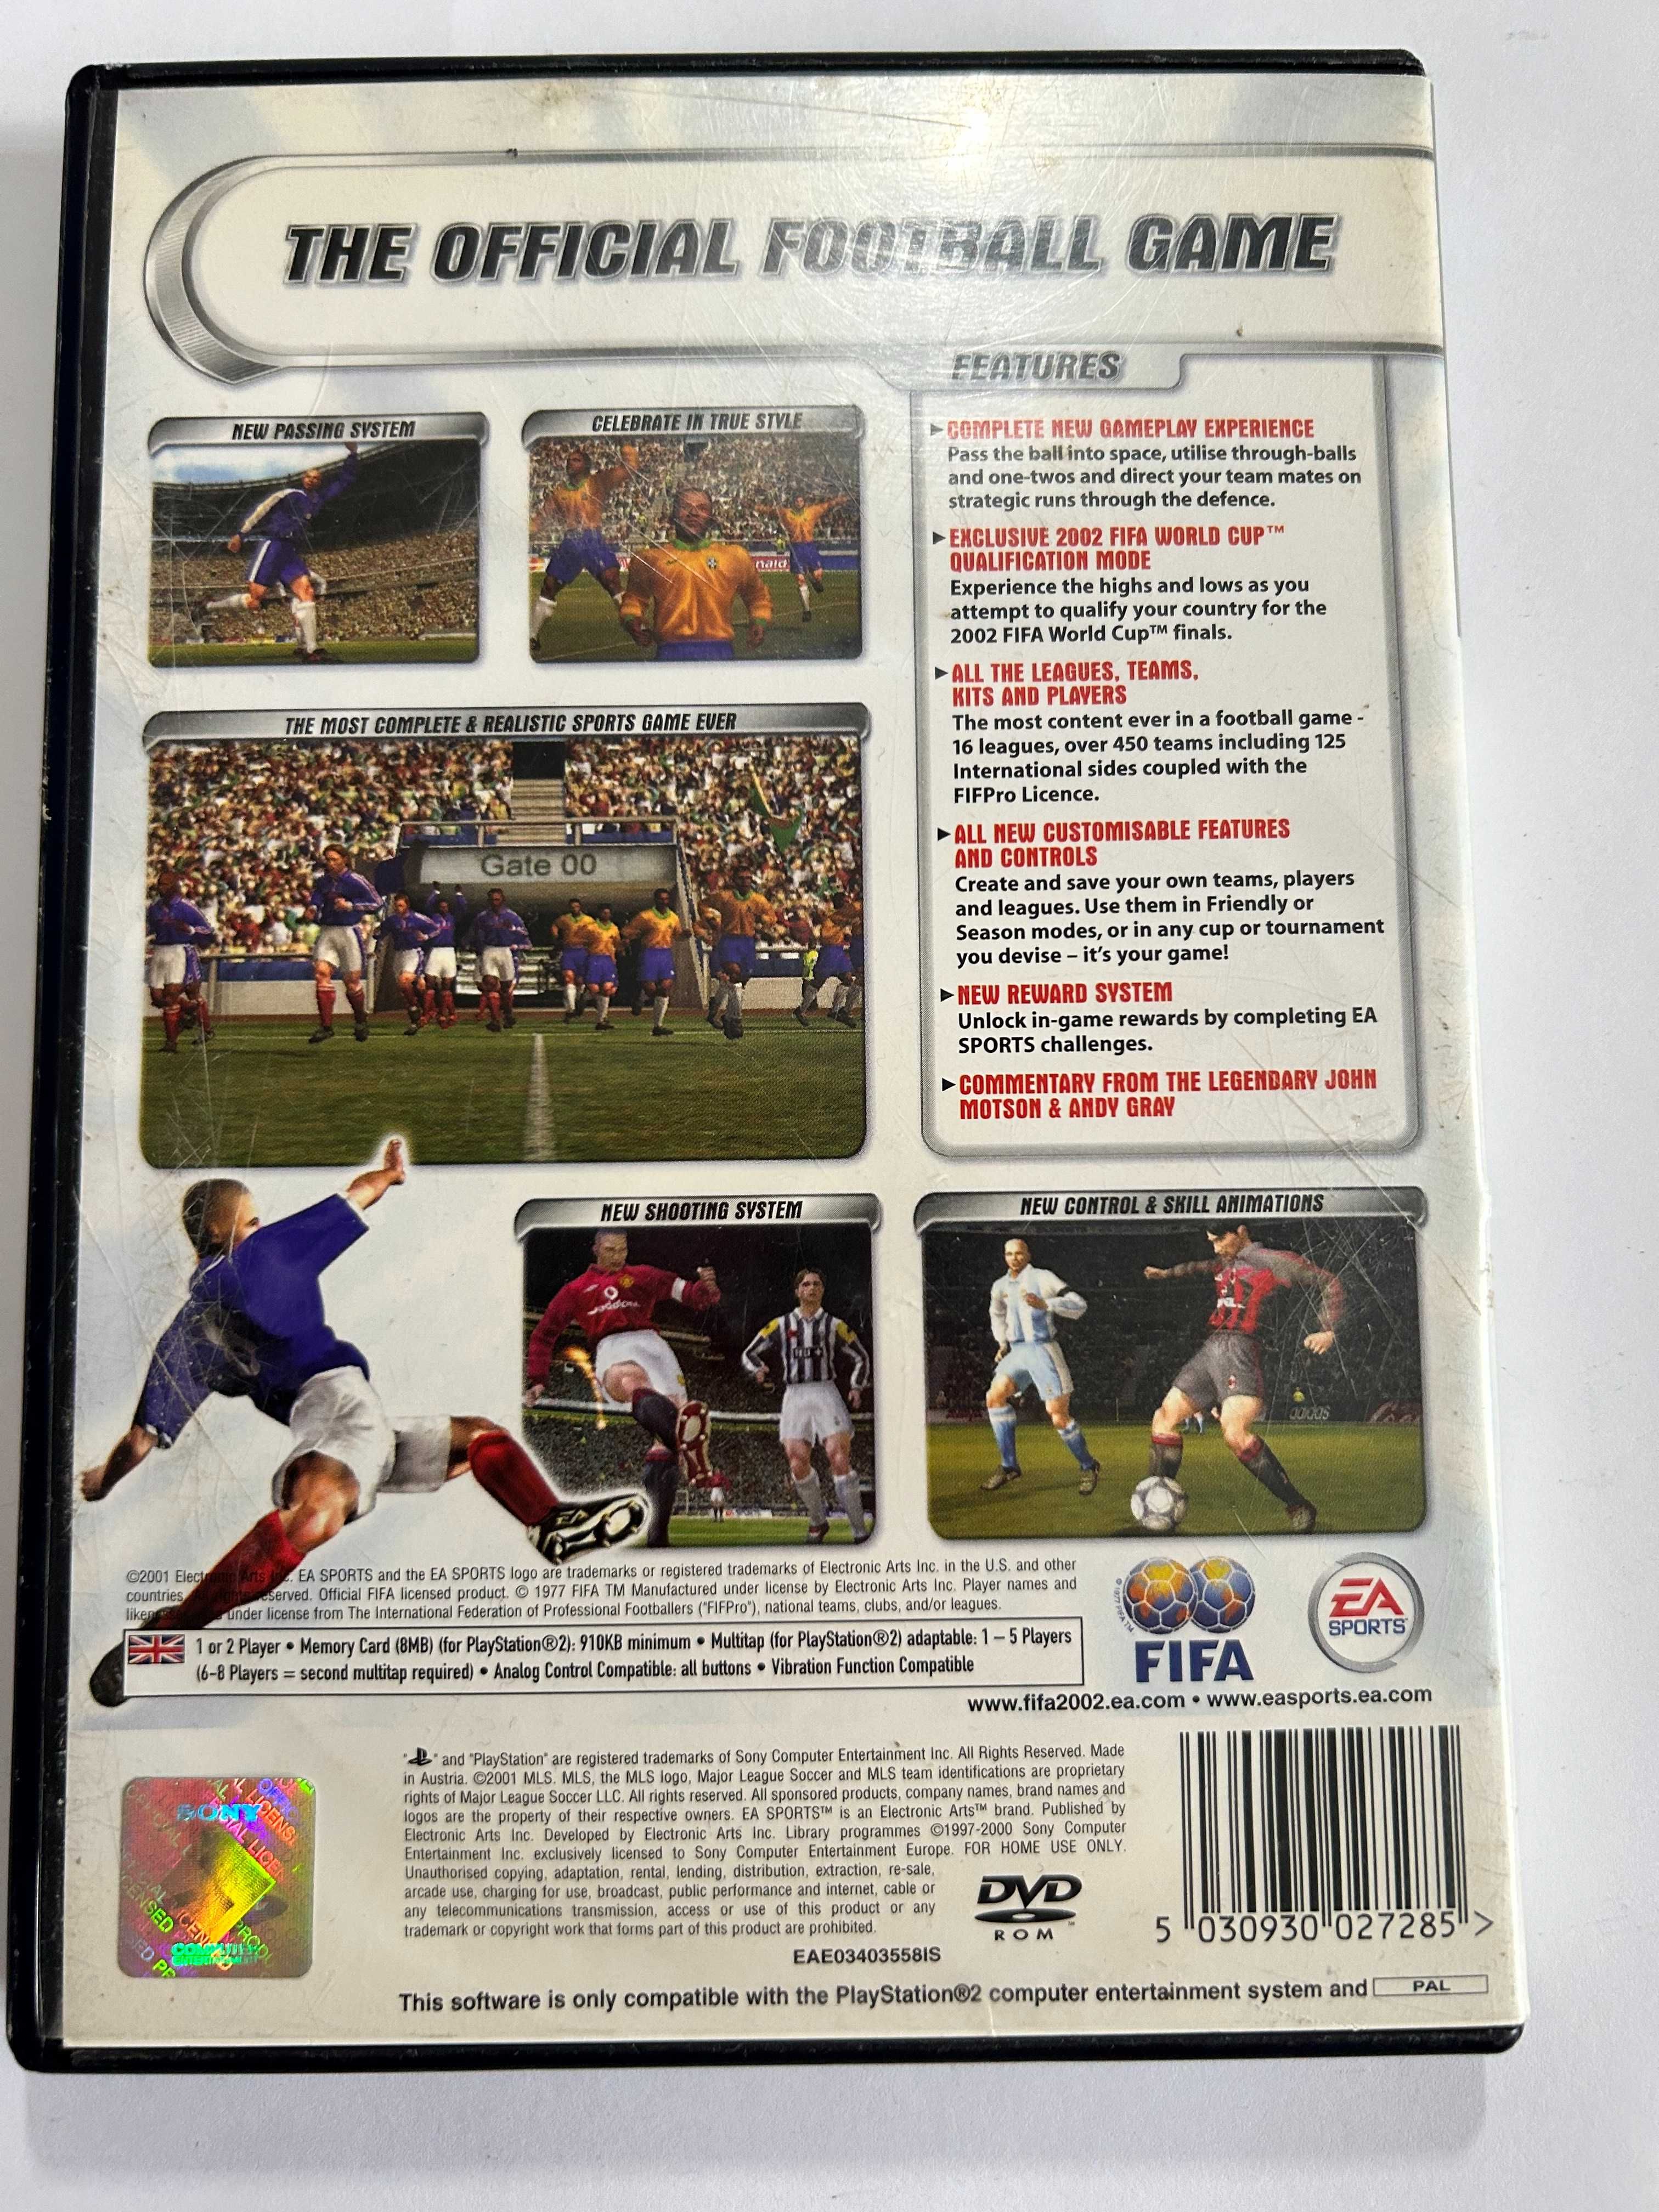 Fifa Football 2002 PS2